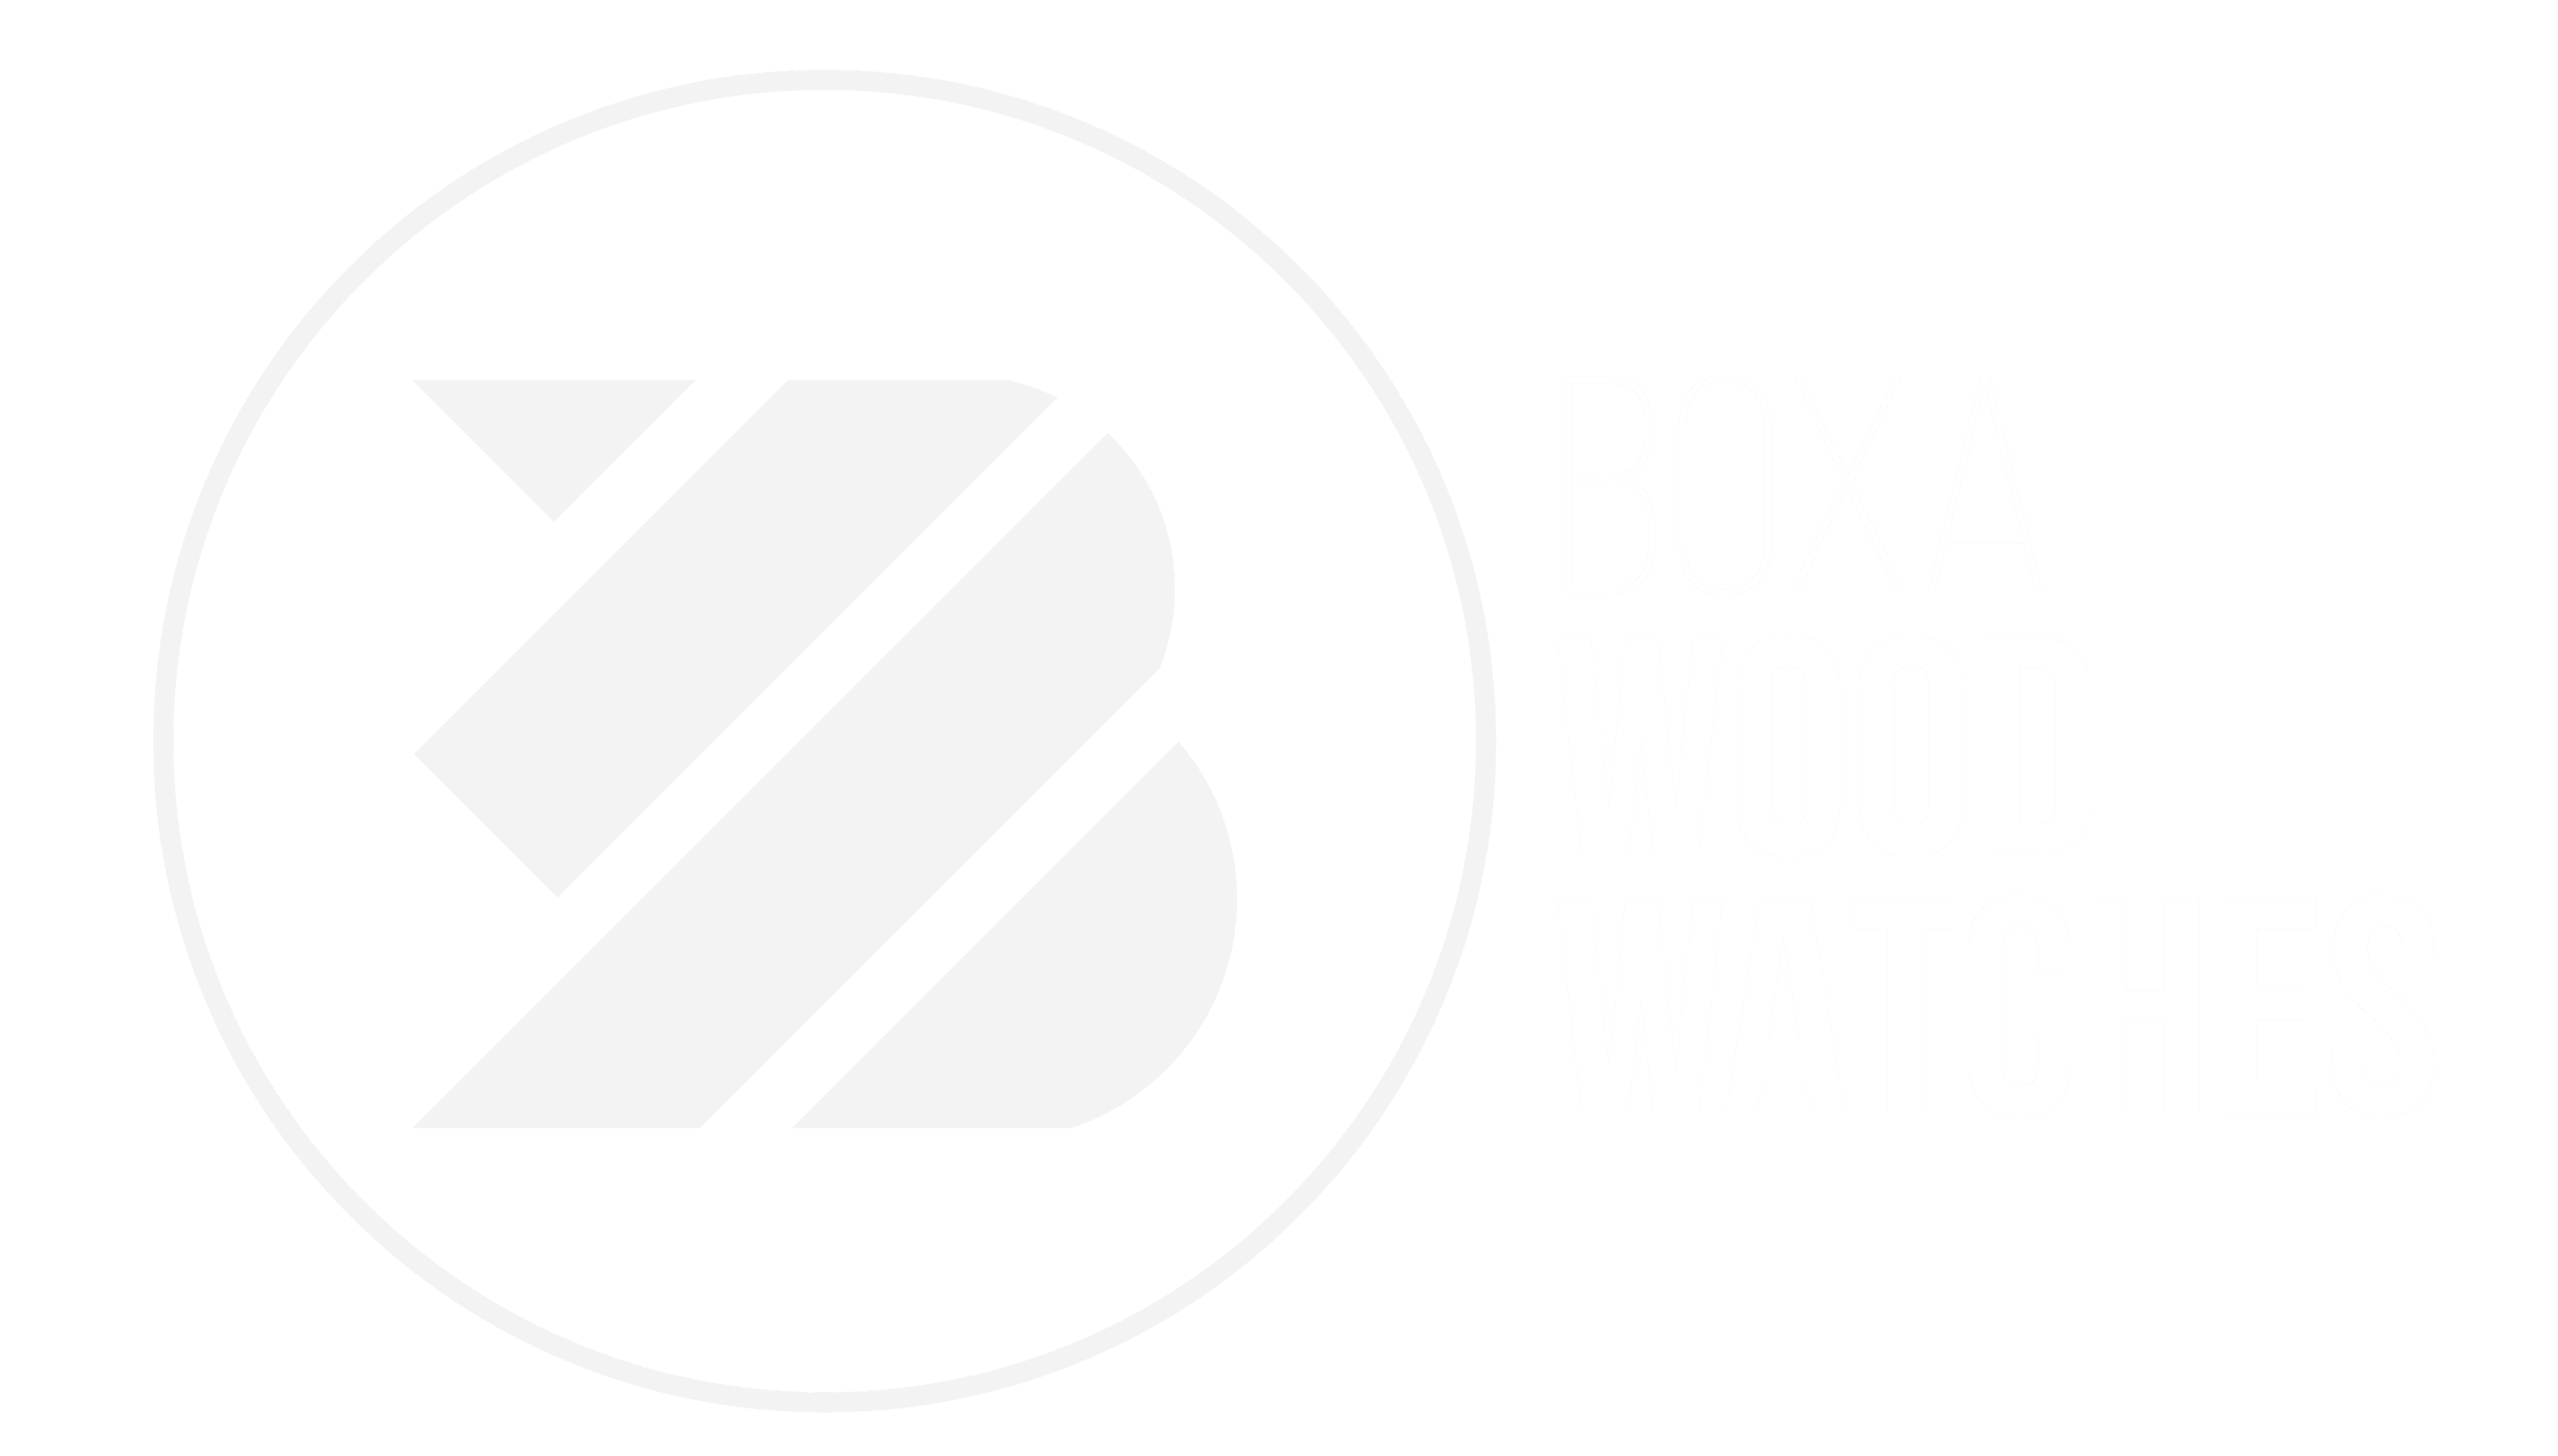 BOXA Wood Watches